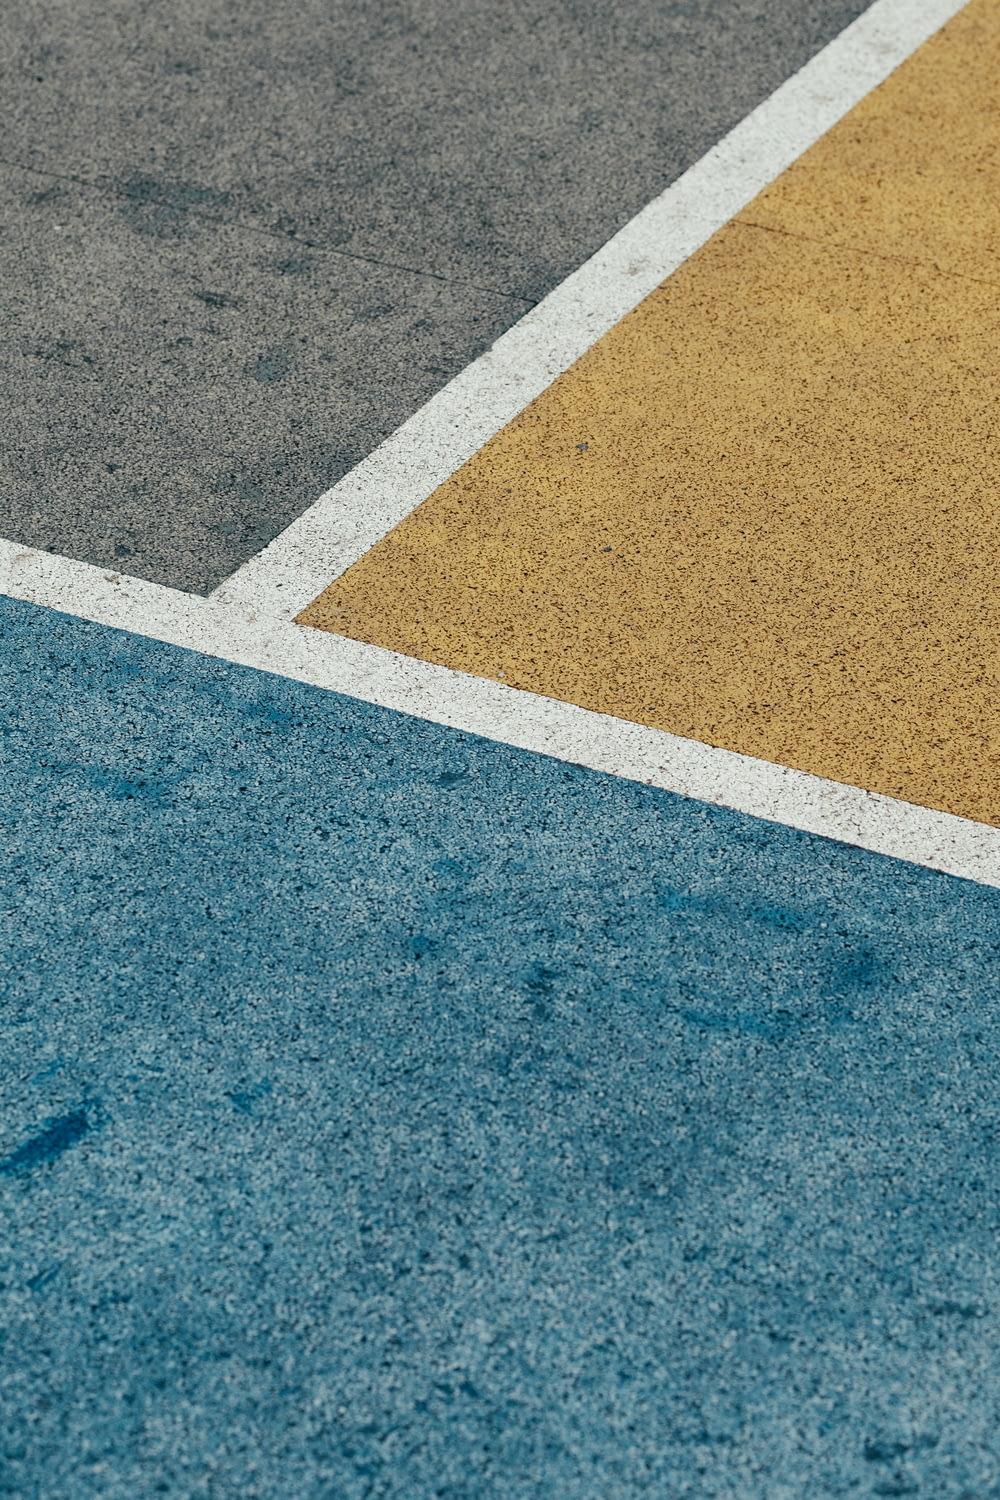 gros plan sur la chaussée peinte en gris, jaune et bleu